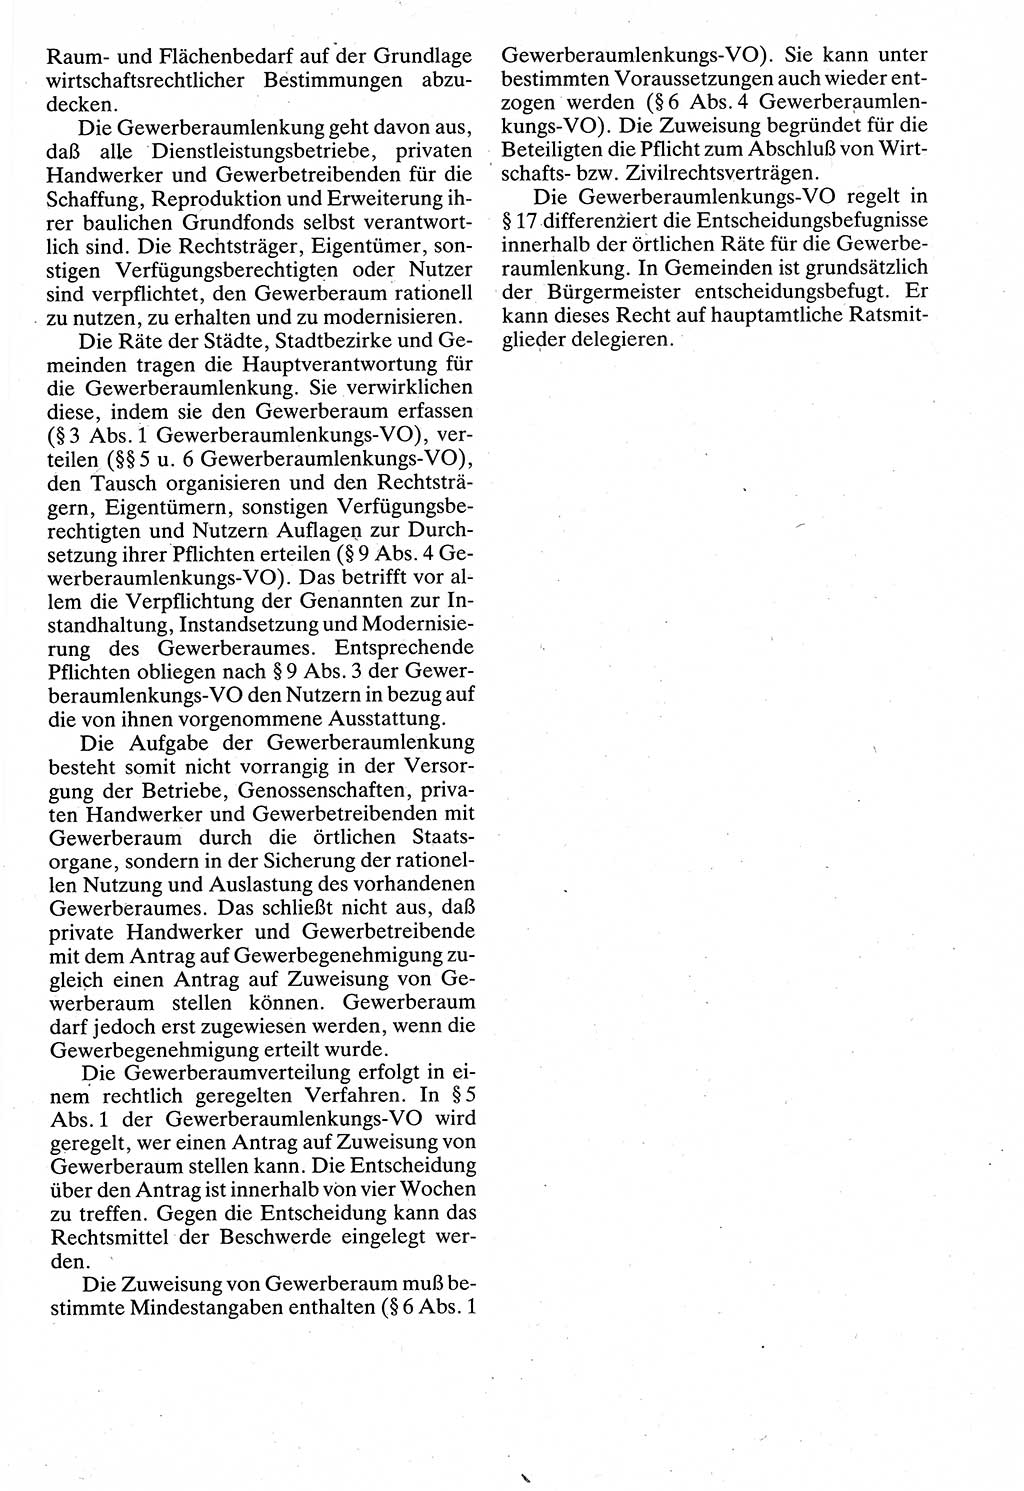 Verwaltungsrecht [Deutsche Demokratische Republik (DDR)], Lehrbuch 1988, Seite 277 (Verw.-R. DDR Lb. 1988, S. 277)